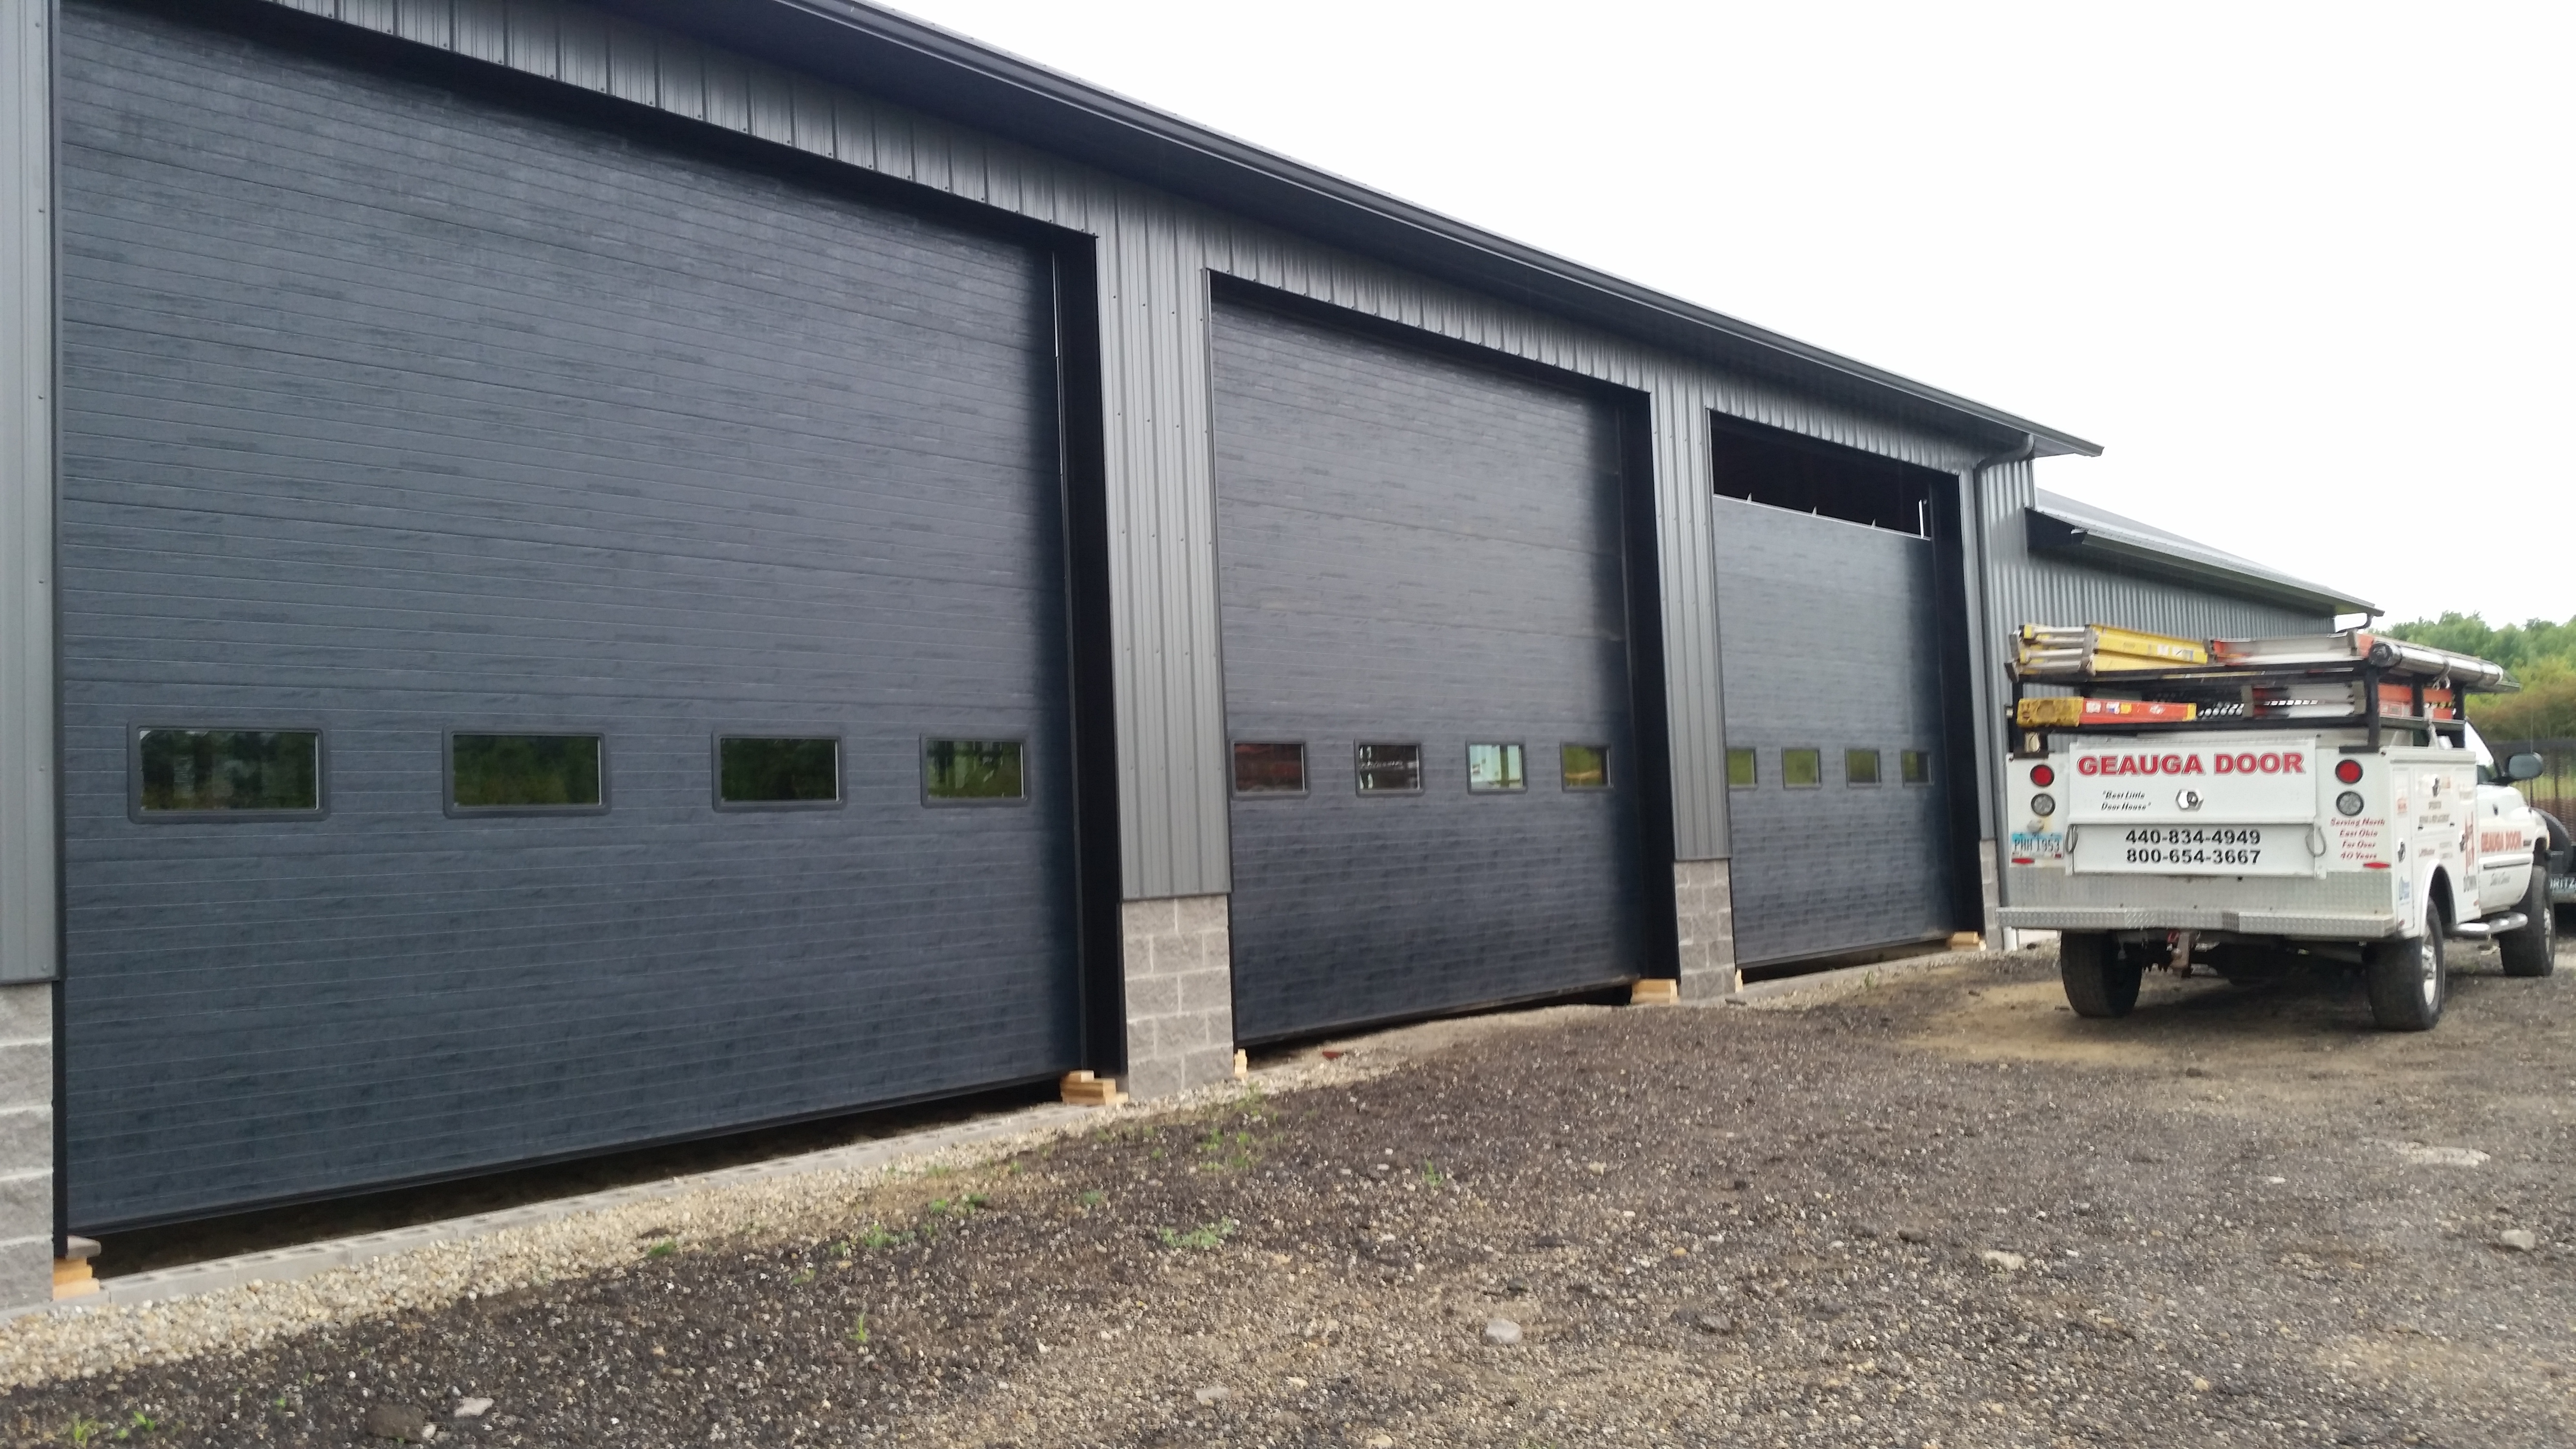 Commercial Garage door sales and service ohio